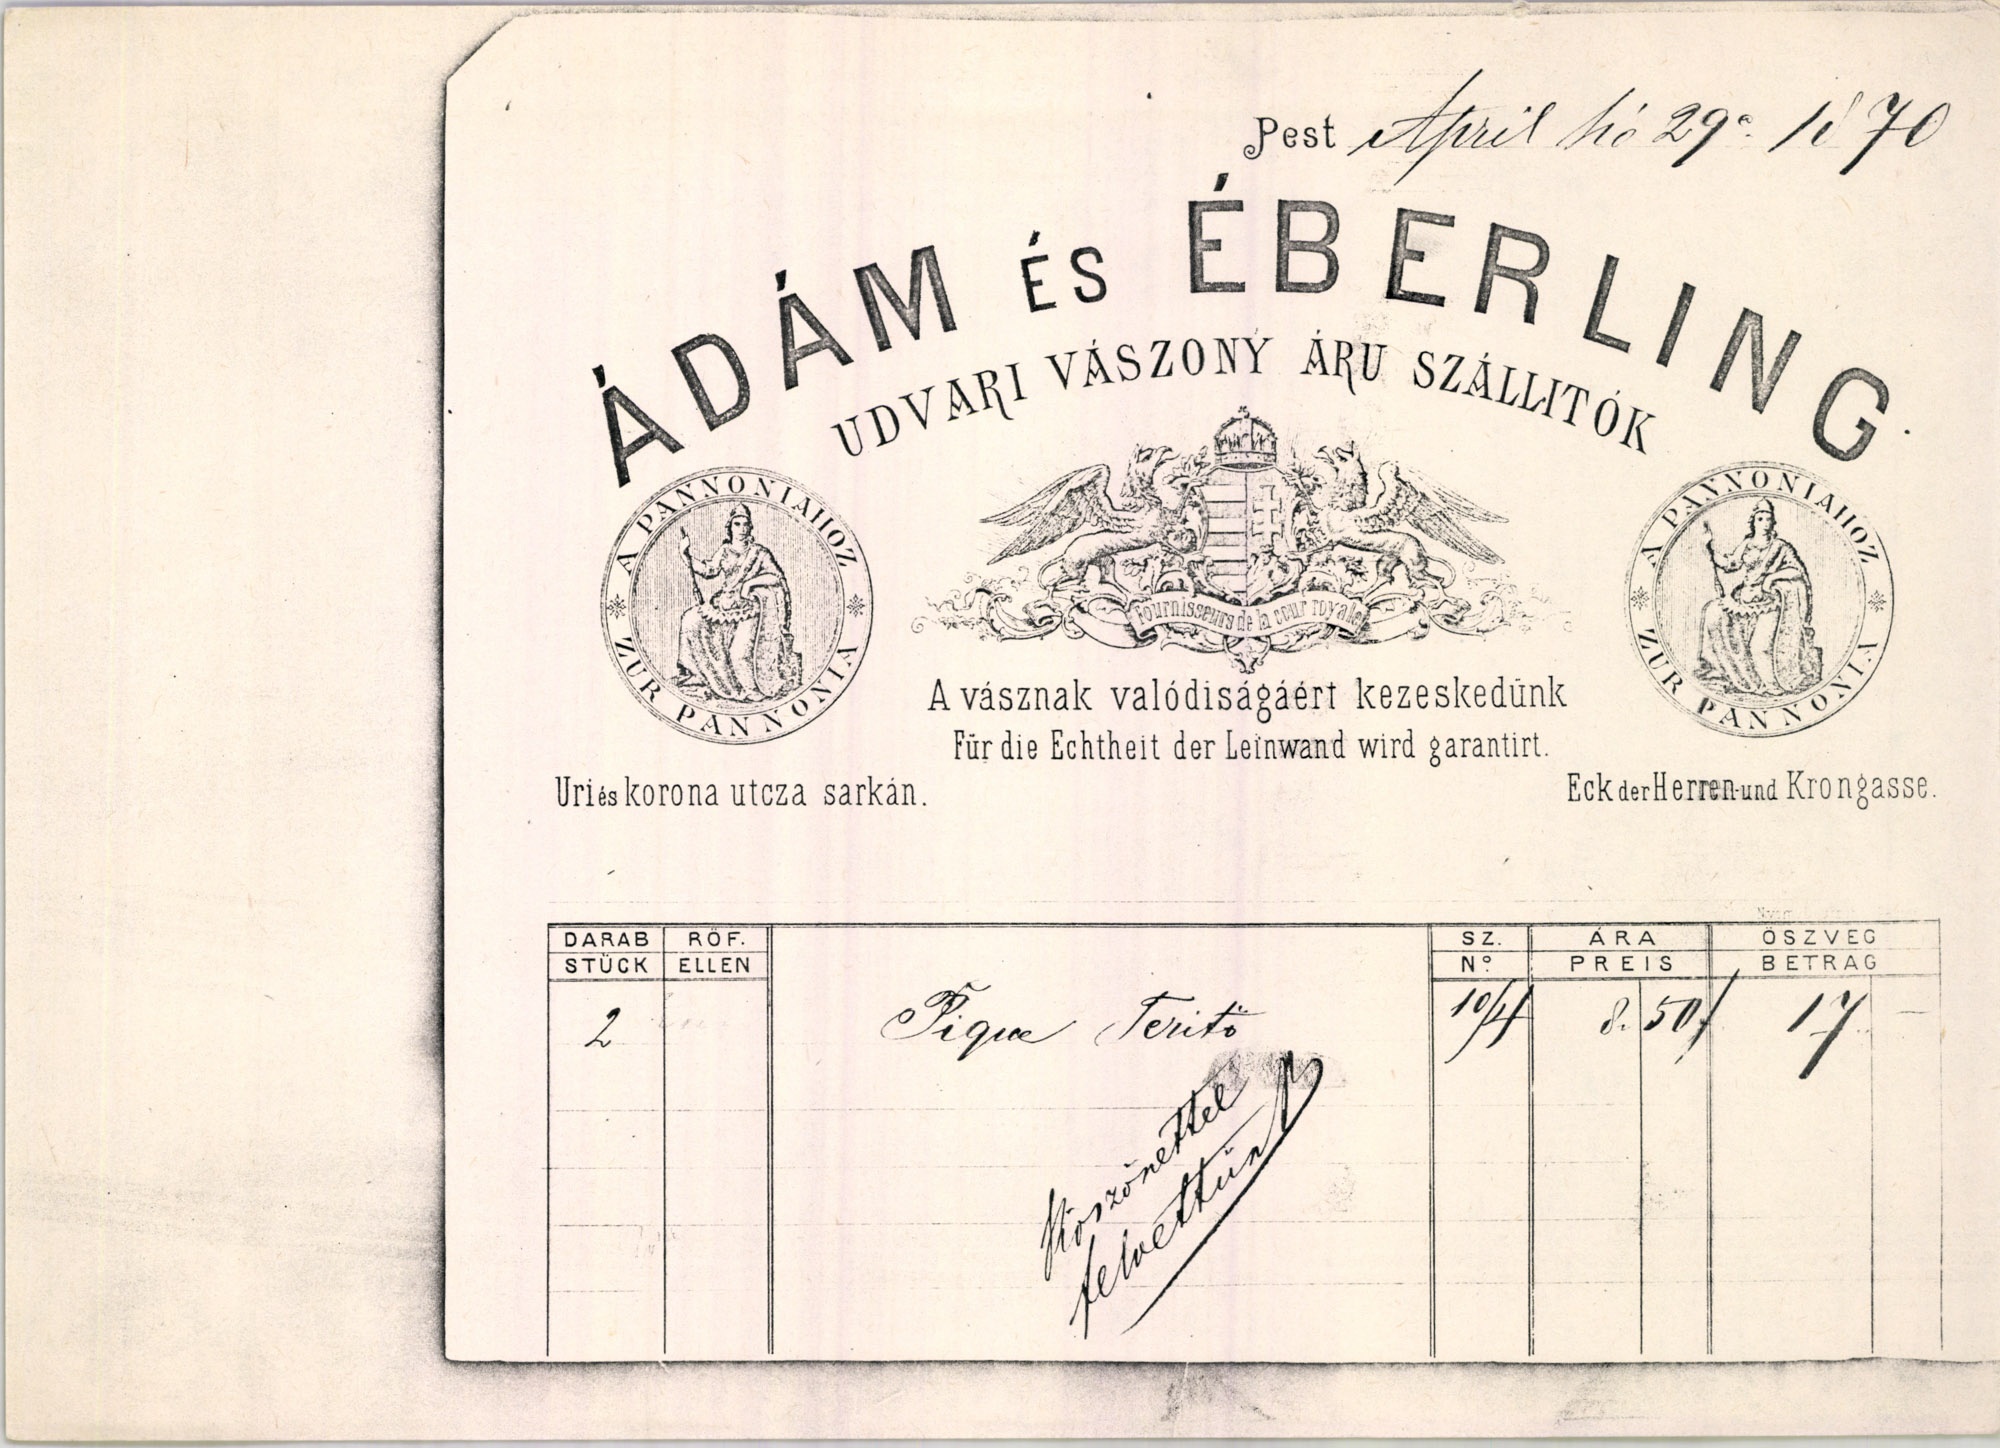 Ádám és Éberling számla (Magyar Kereskedelmi és Vendéglátóipari Múzeum CC BY-NC-SA)